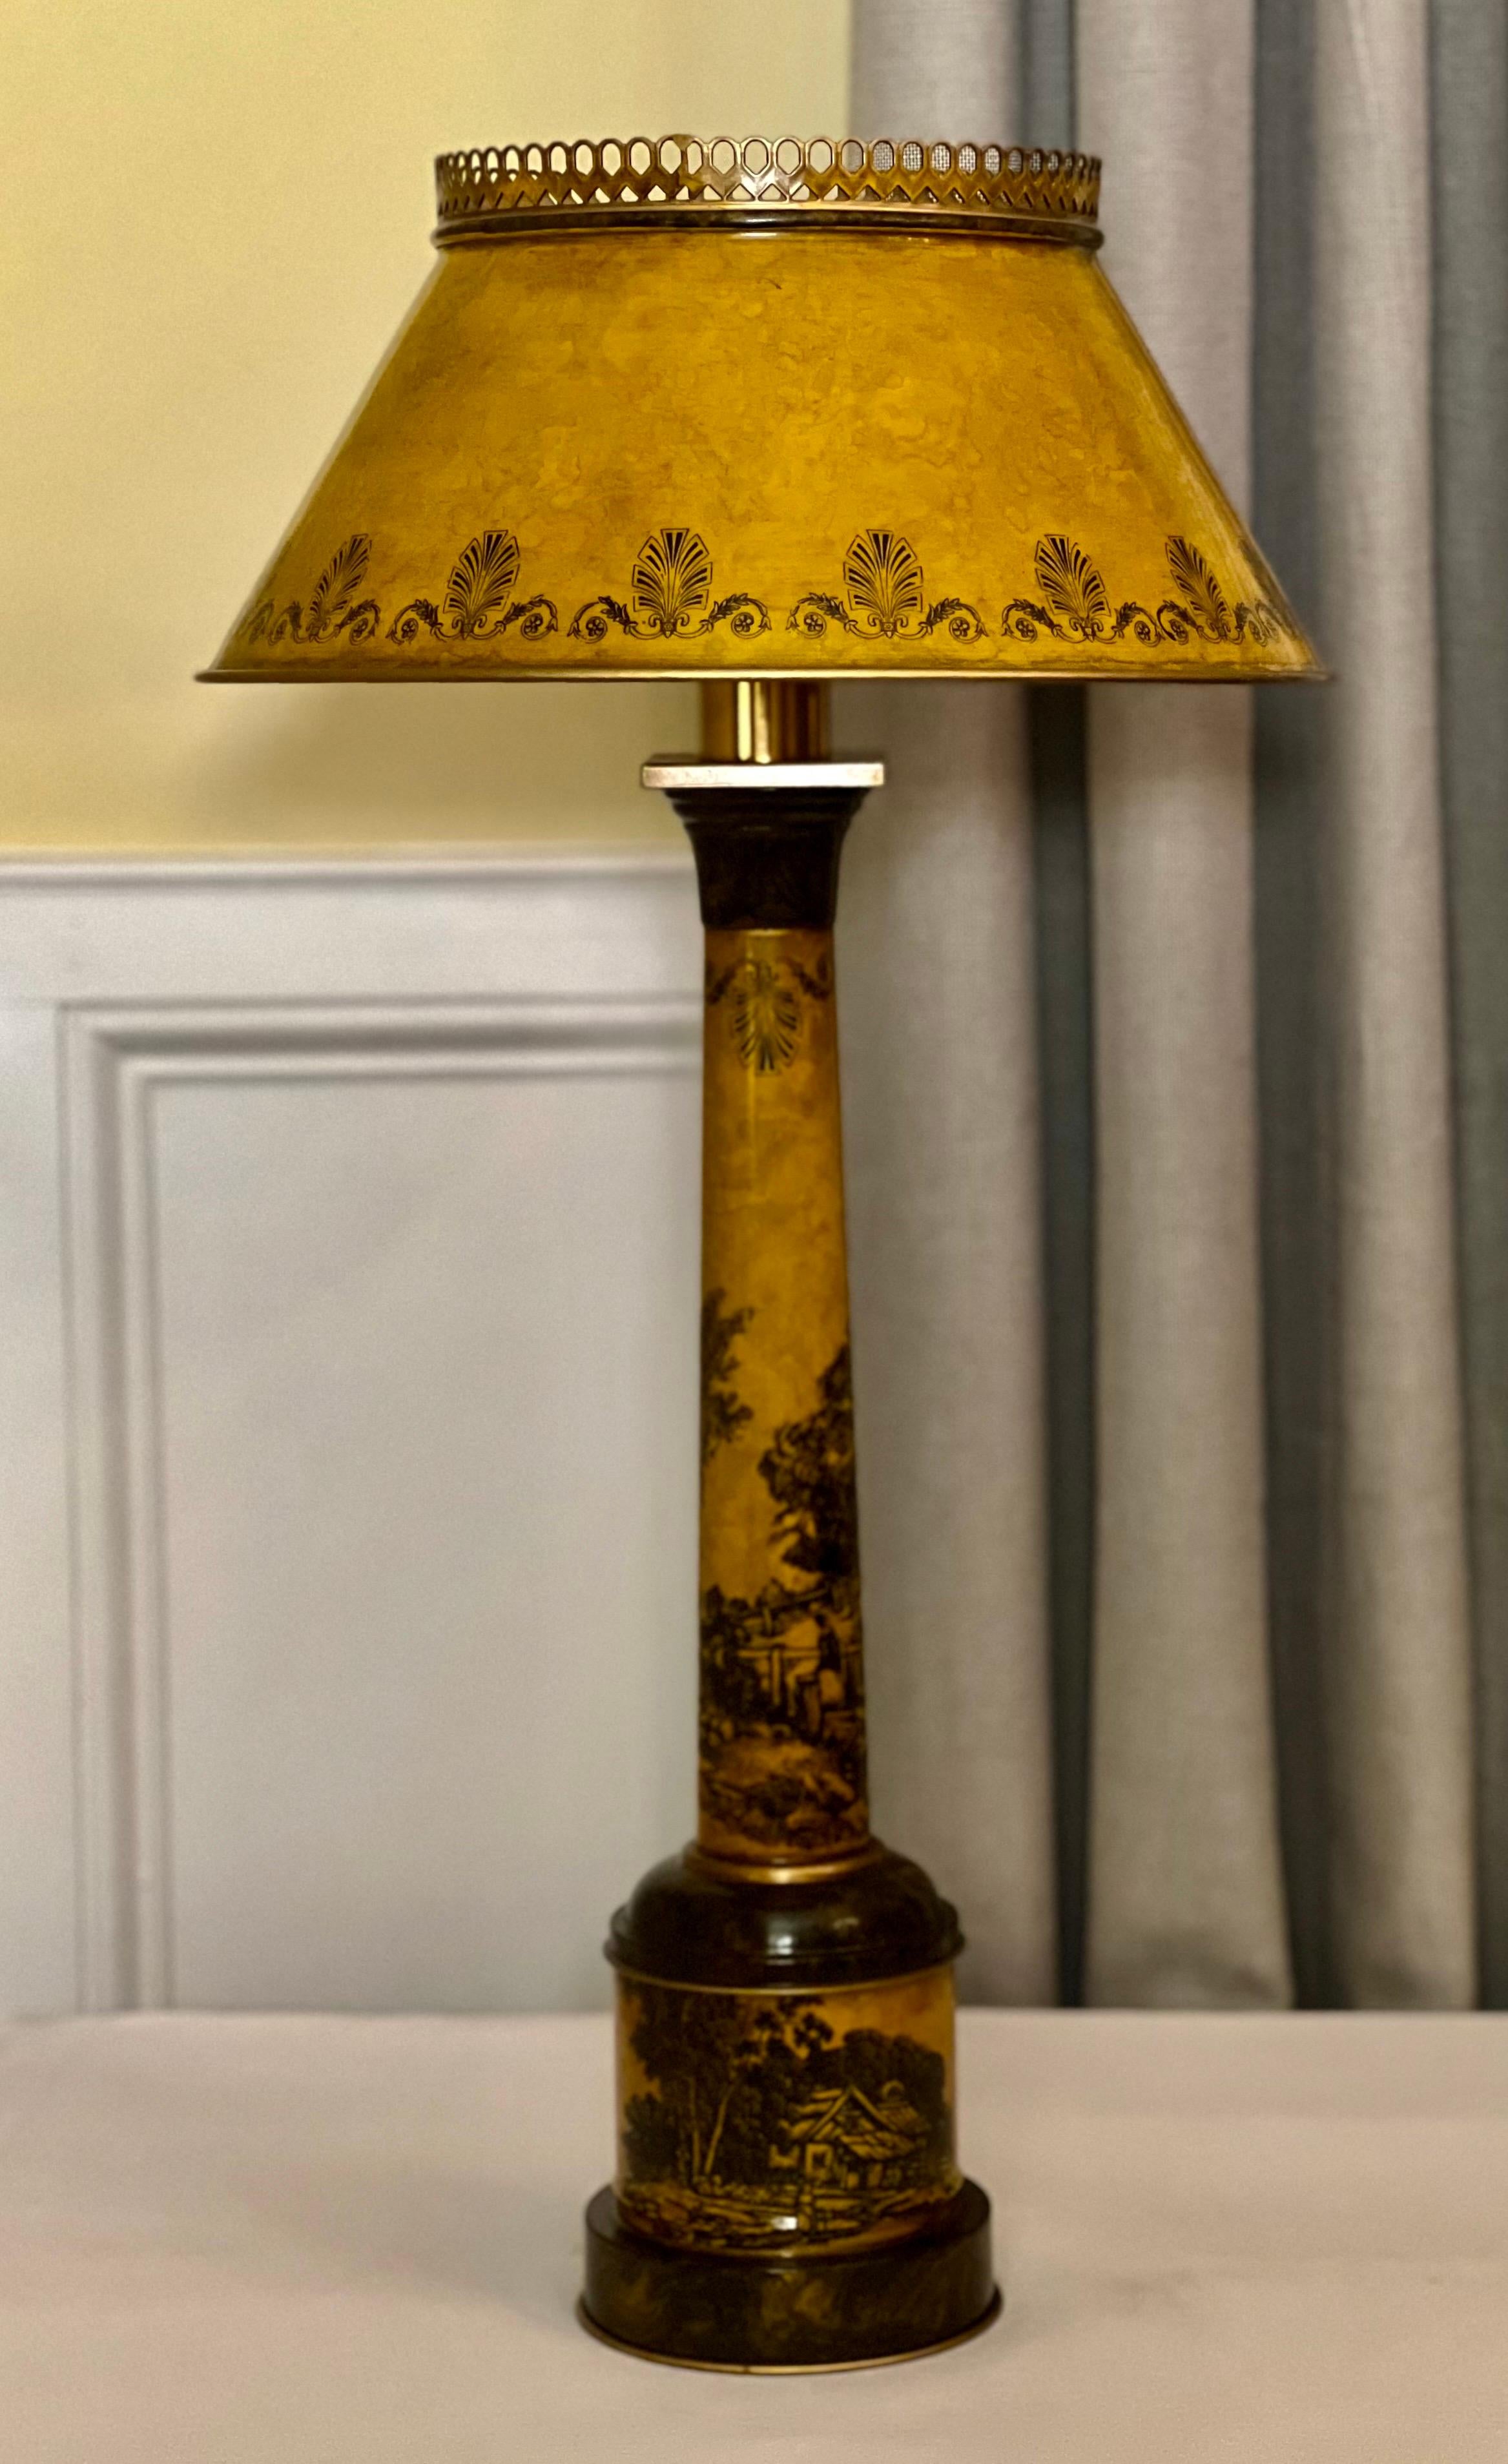 Lampe à tole italienne du milieu du 20e siècle avec abat-jour d'origine.

Lampe de table de forme colonne en tole italien dans une chaude teinte ocre. Il est peint de façon complexe avec une scène pastorale tranquille avec des animaux, des